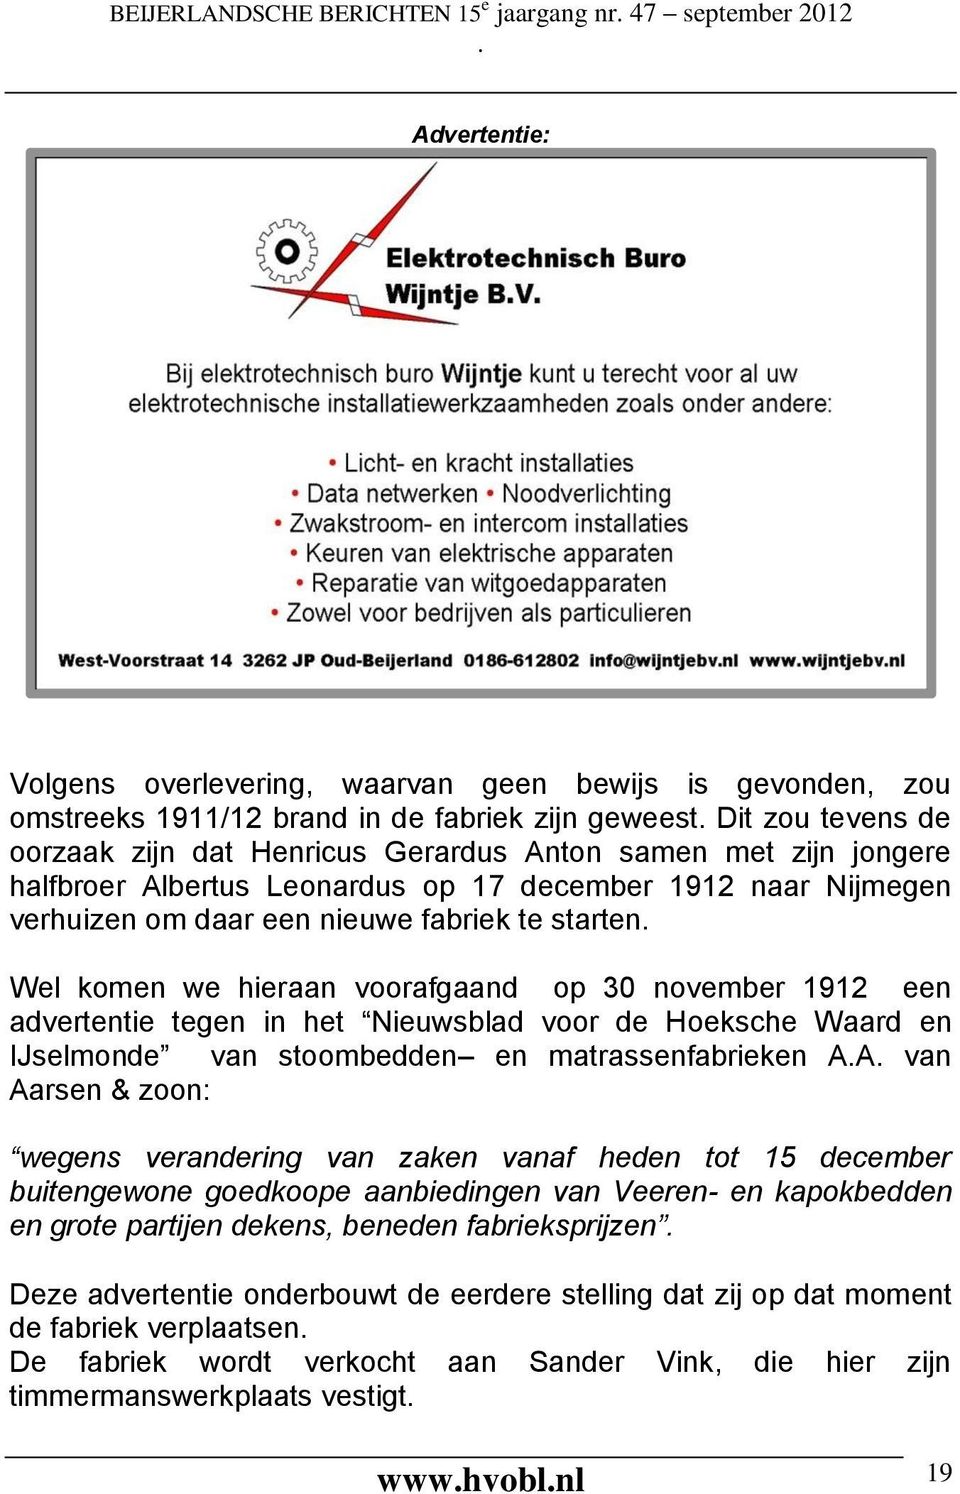 voorafgaand op 30 november 1912 een advertentie tegen in het Nieuwsblad voor de Hoeksche Waard en IJselmonde van stoombedden en matrassenfabrieken AA van Aarsen & zoon: wegens verandering van zaken